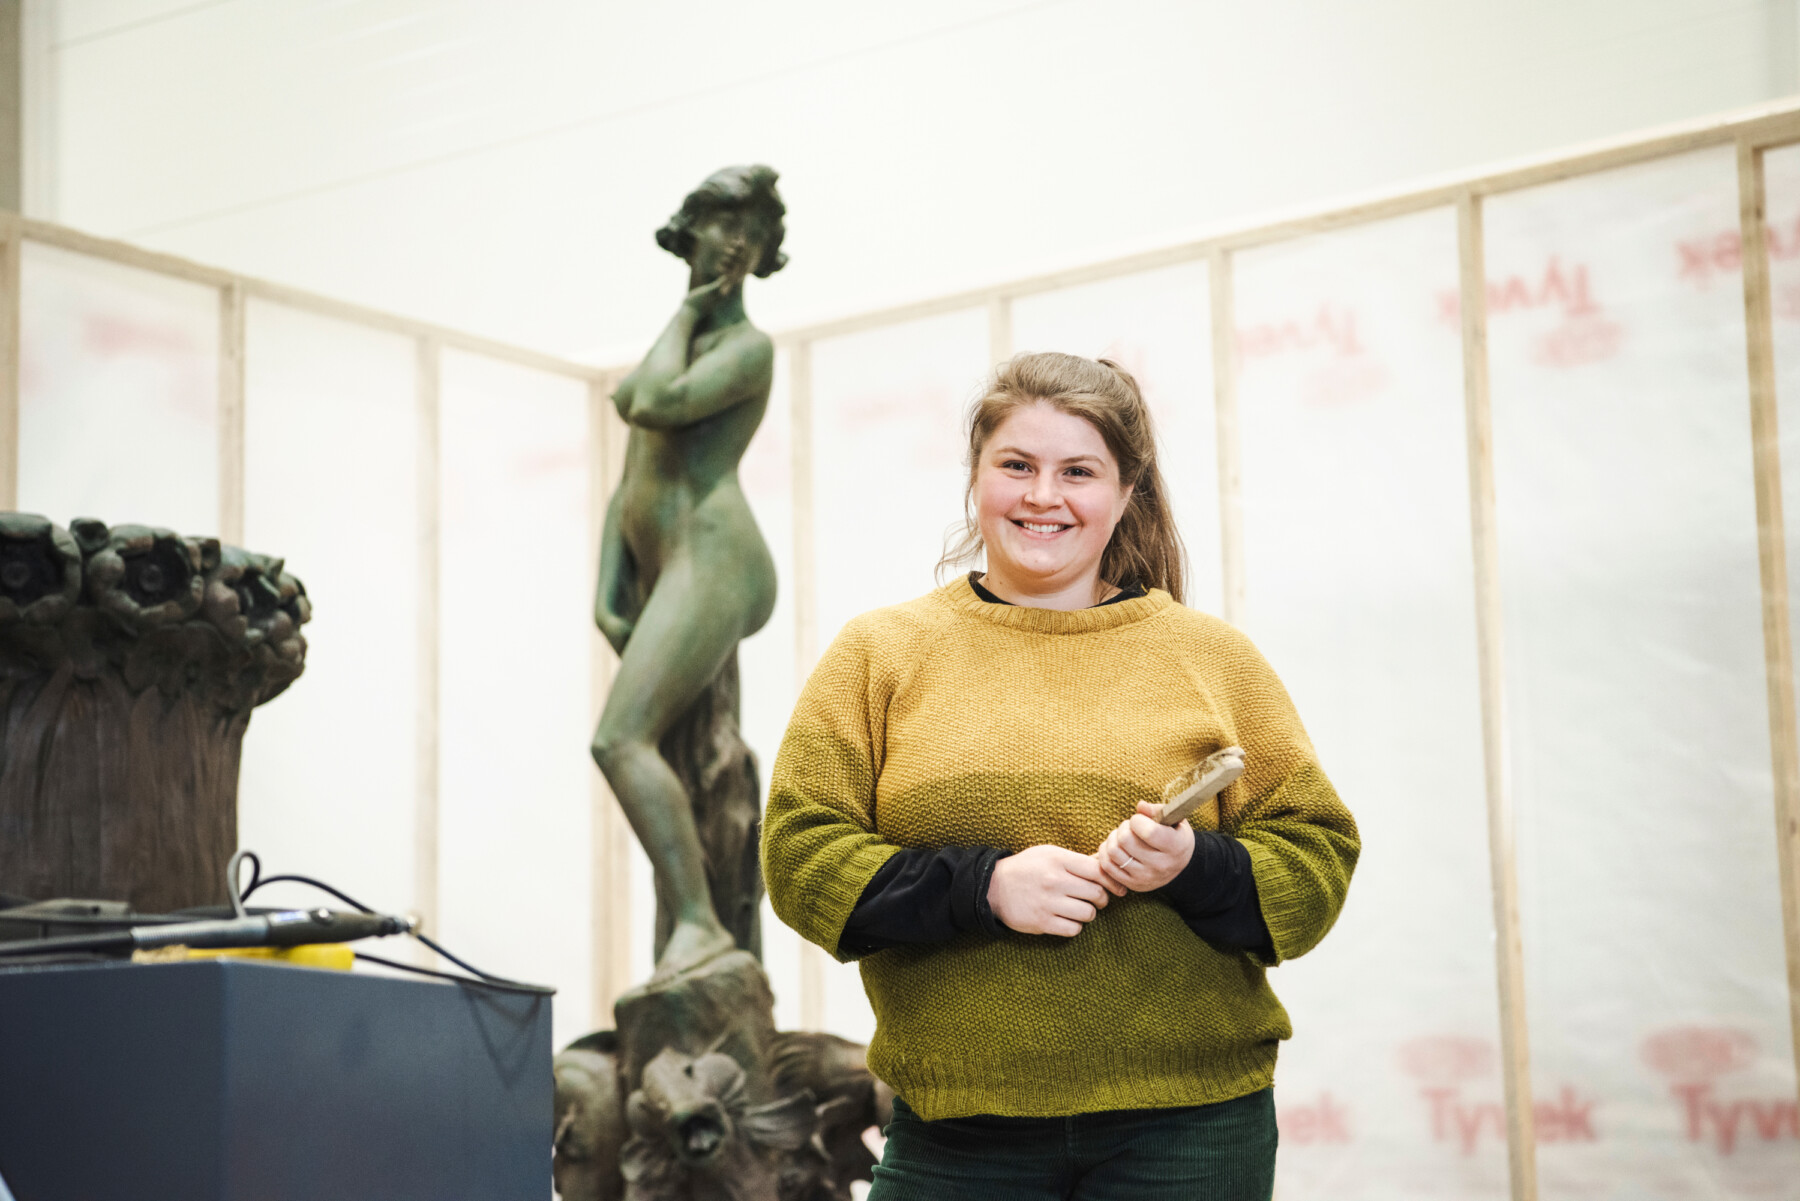 Une femme tenant un pinceau dans ses mains est debout dans un atelier face à une statue en métal représentant une figure féminine. 